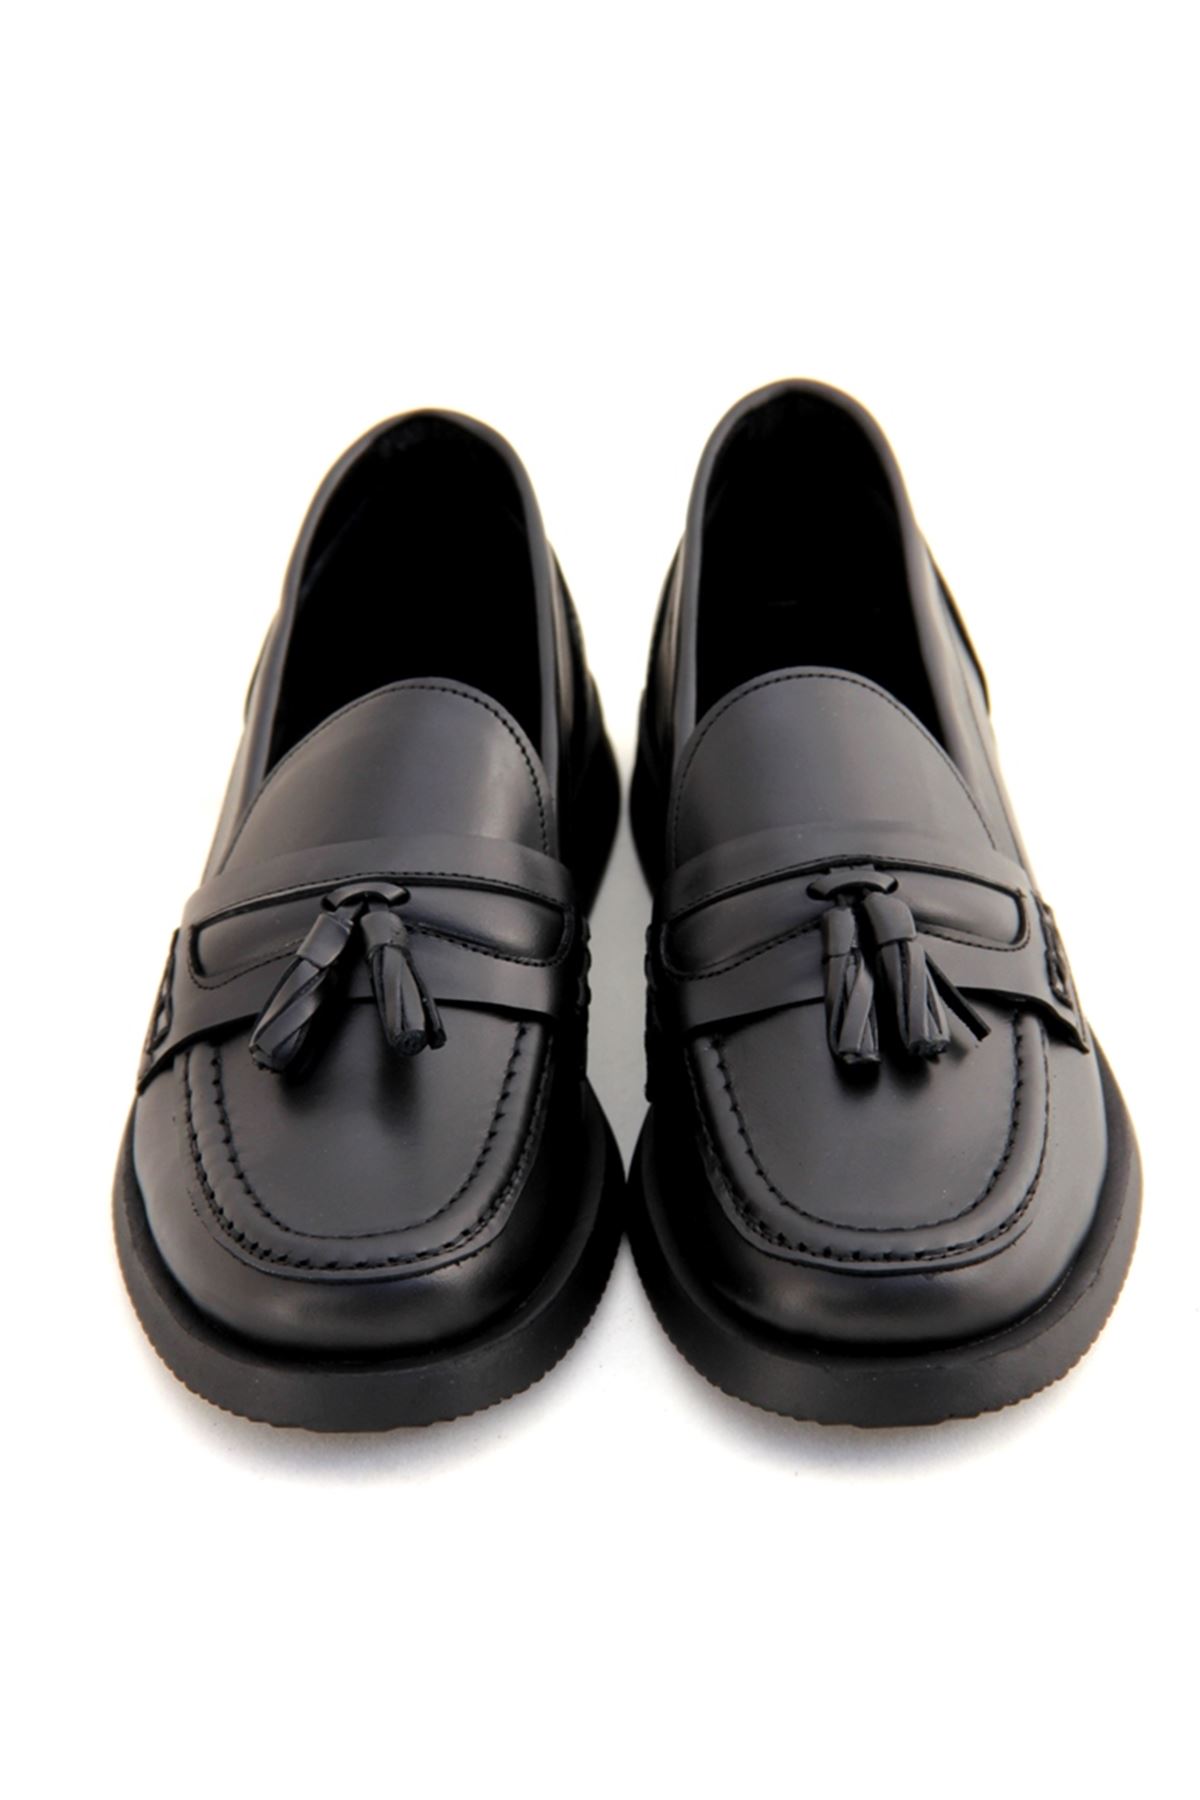 Albini 101163 Hakiki Deri Kadın Ayakkabı - Siyah